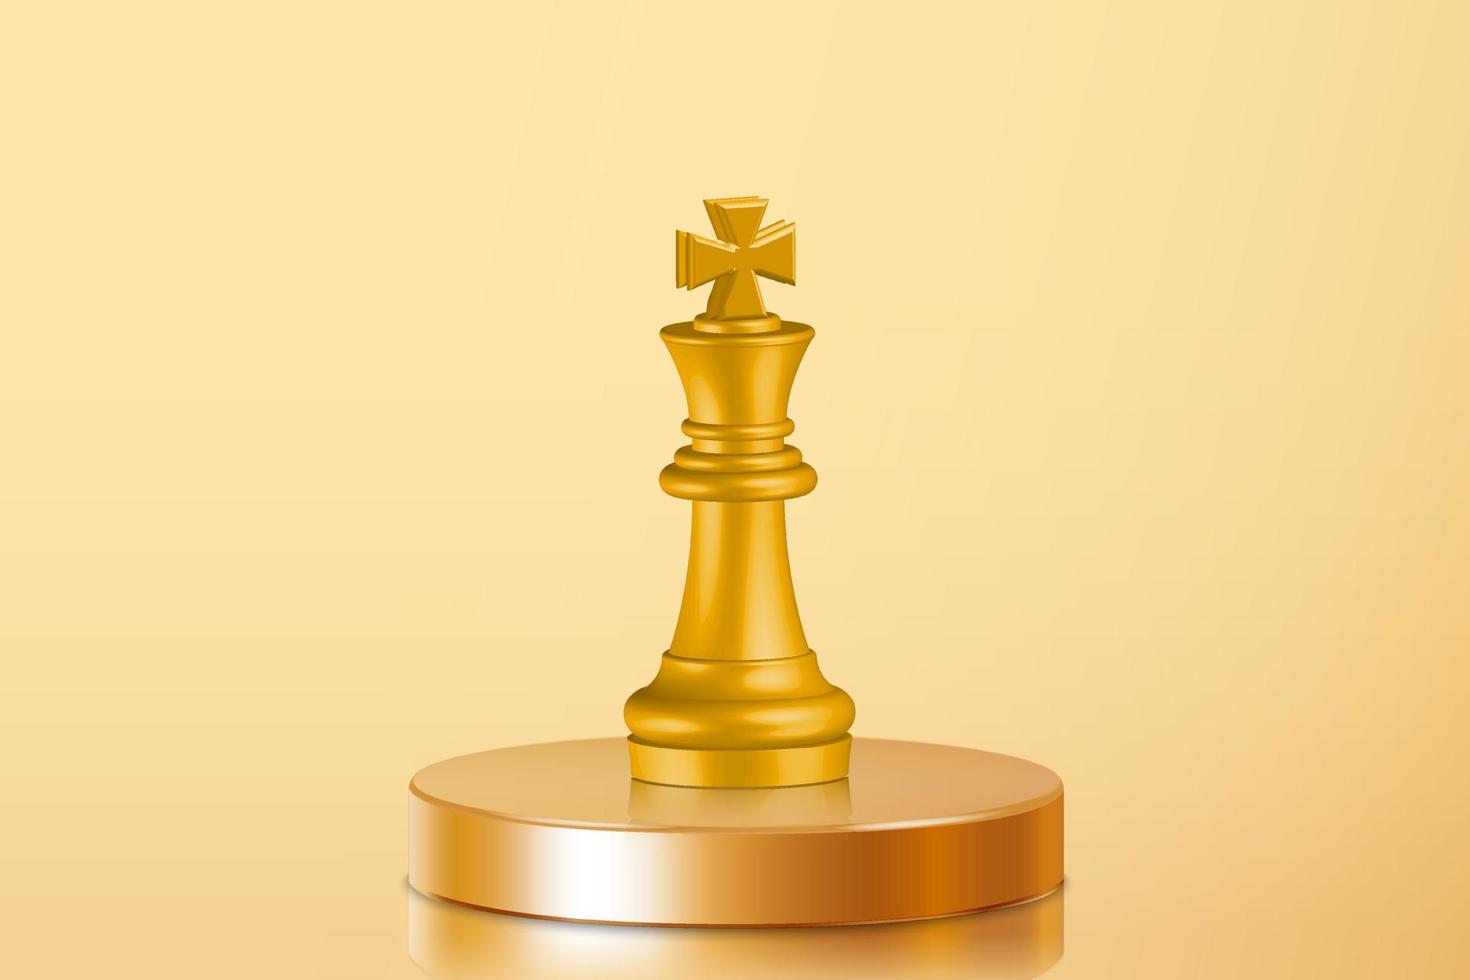 3d guld kung schack figur på Centrum av gyllene podium. prick i mål. företag investering mål, aning utmaning, mål strategi, år fokus begrepp illustration vektor